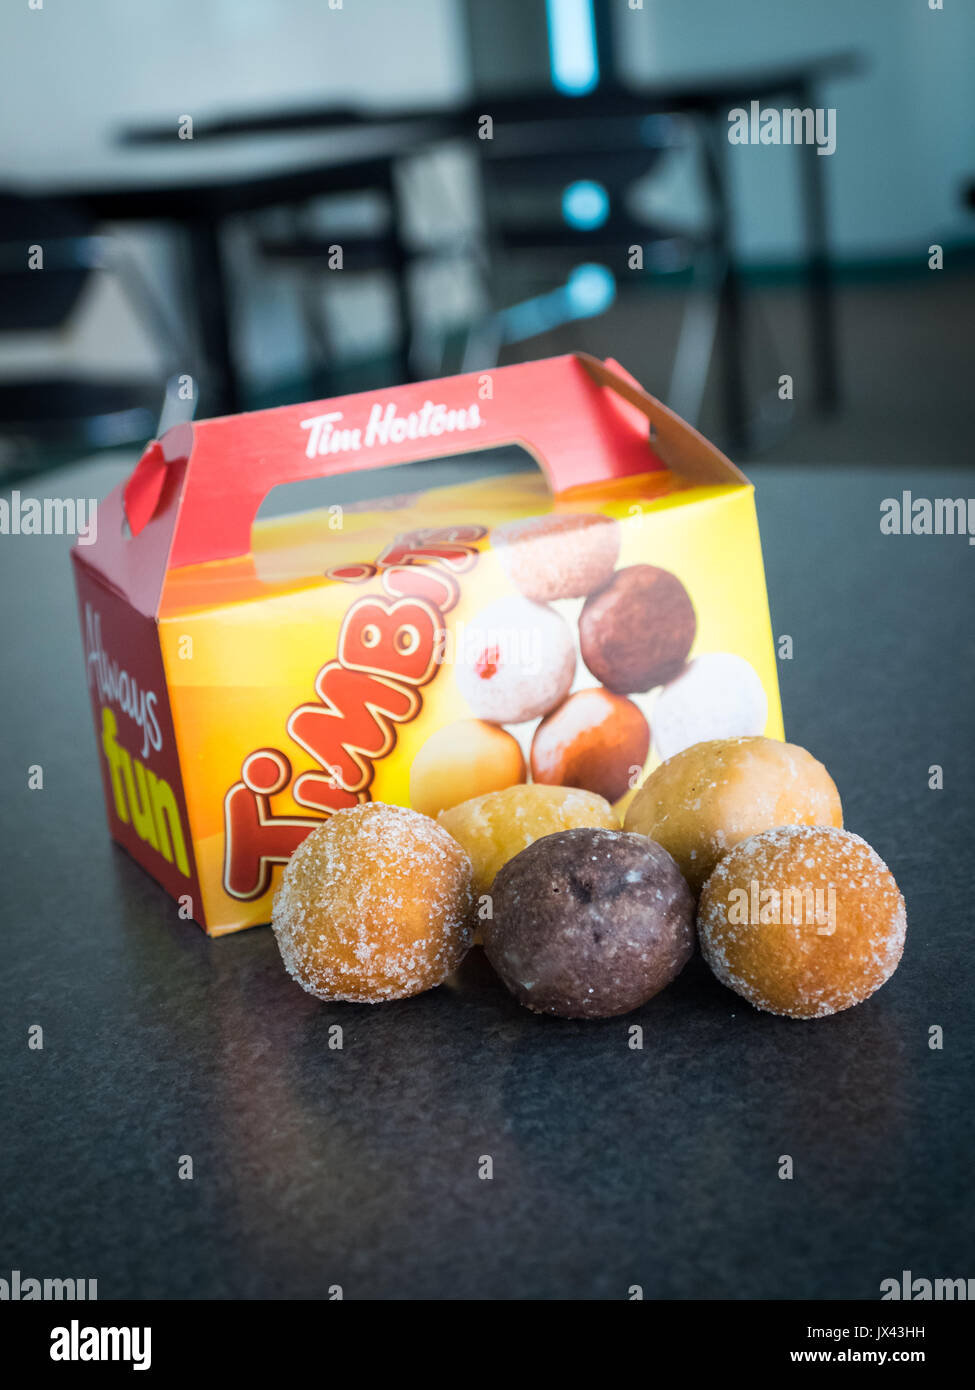 (Trous de beignes Timbits, des trous de beignes de Tim Hortons, une populaire chaîne de restauration rapide canadienne. Banque D'Images